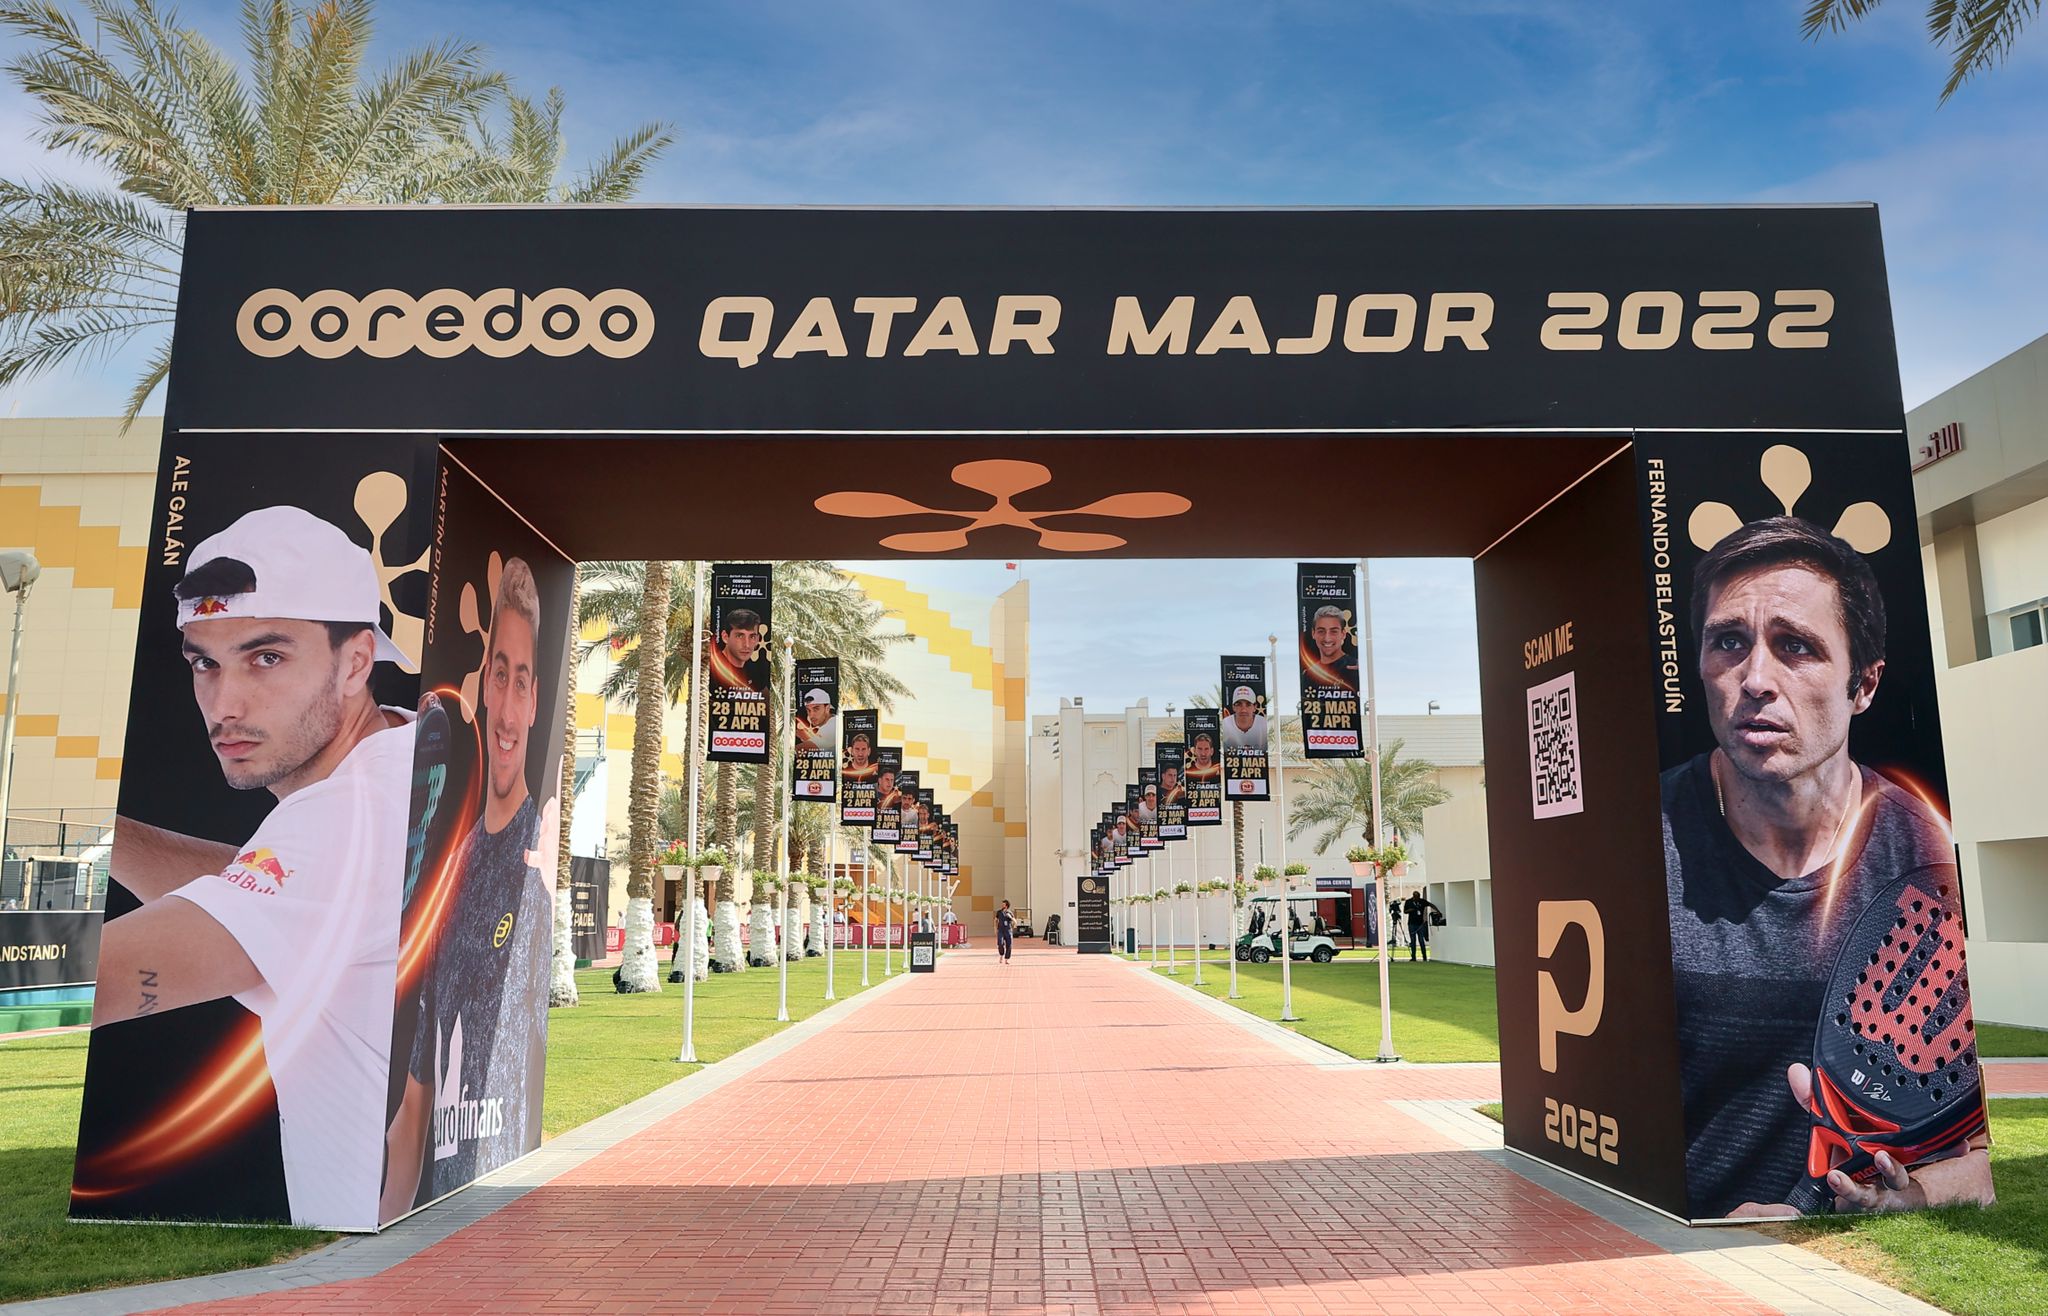 Deelname Khalifa Doha Qatar Major 2022